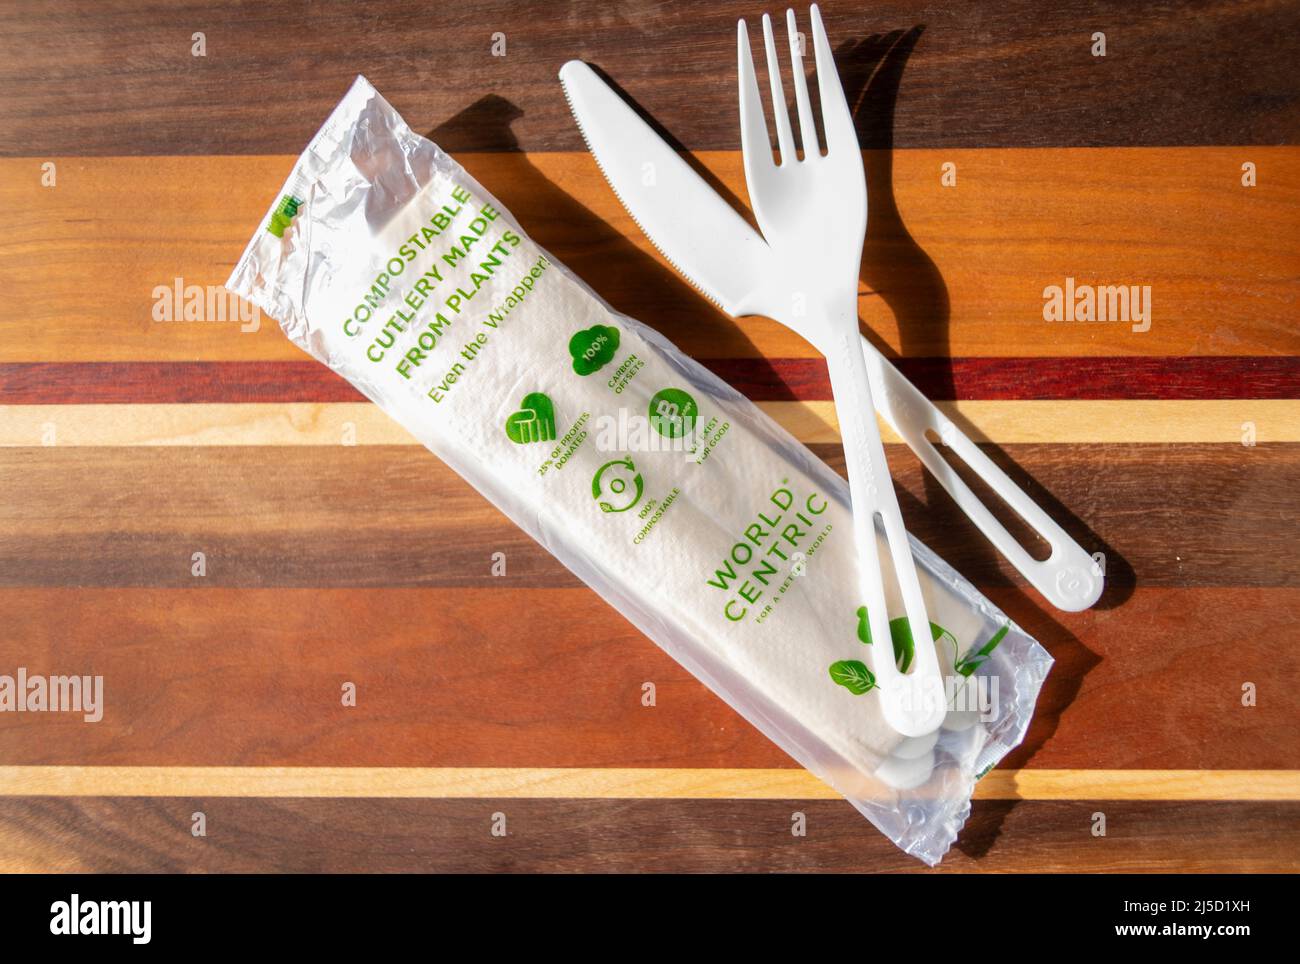 Cubiertos biodegradables utensilios hechos por World Centric hecho de plantas tierra amigable cuchillo tenedor y cuchara Foto de stock